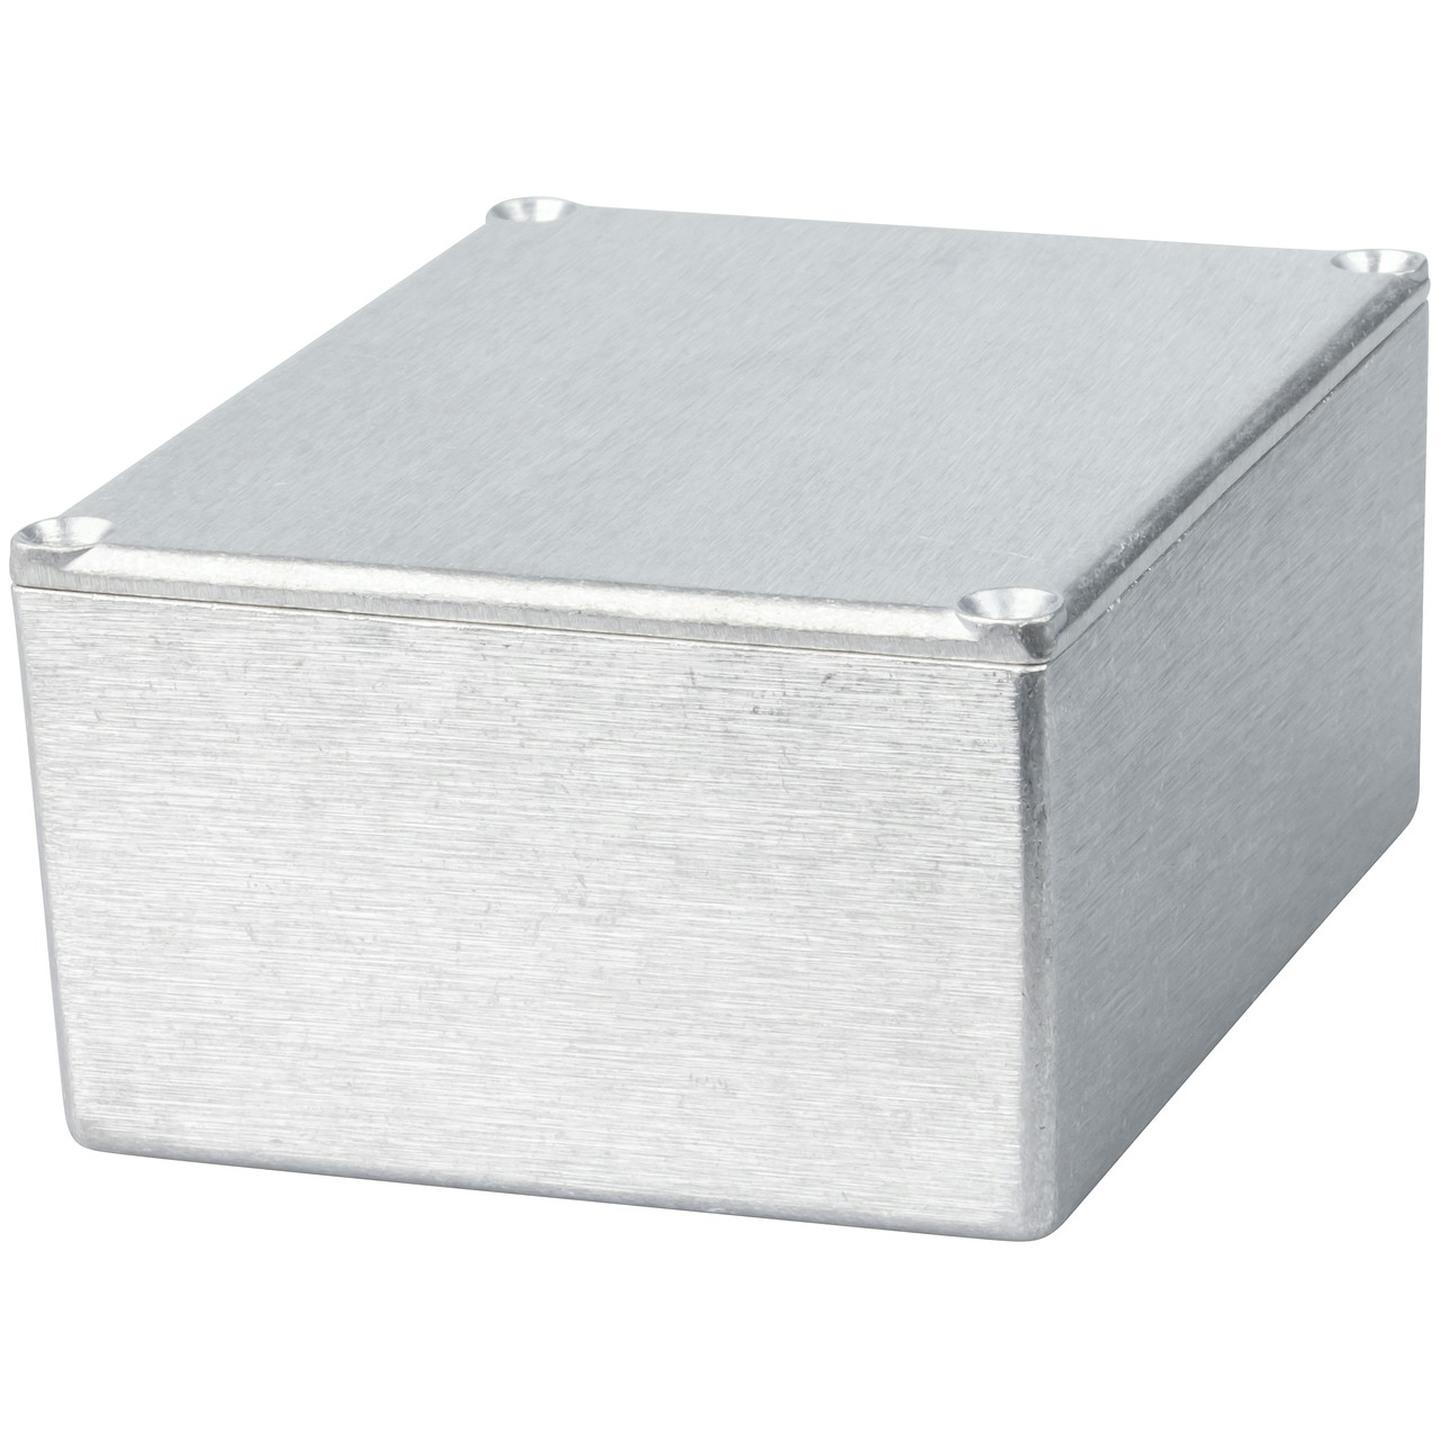 Economy Die-cast Aluminium Boxes - 119 x 93.5 x 56.5mm